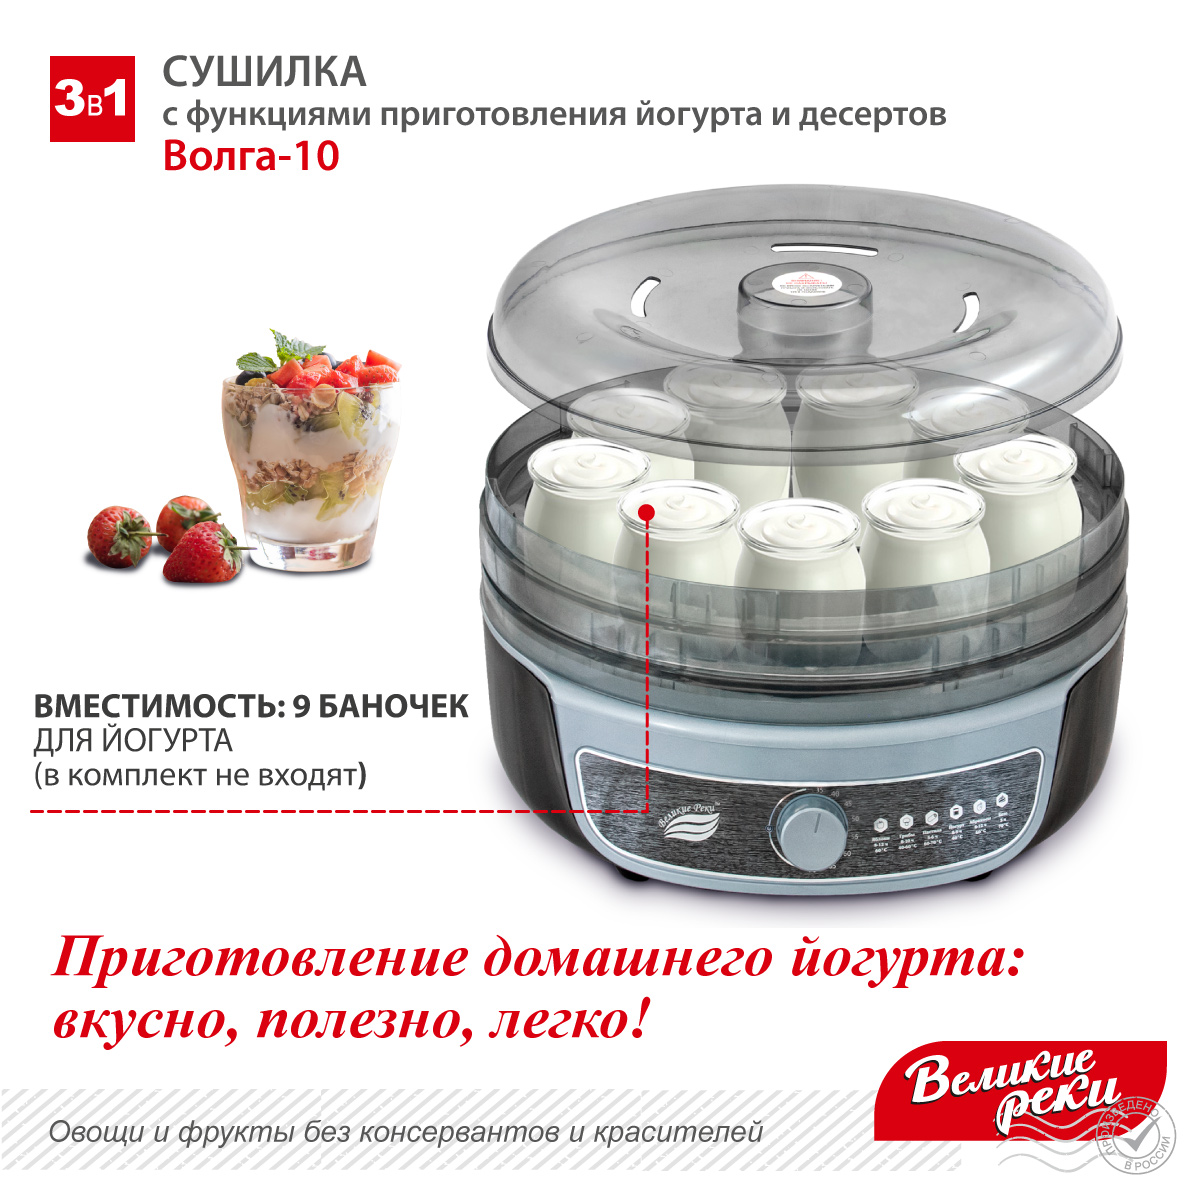 Сушилка для овощей 3в1 с функциями приготовления йогурта и десертов + 2 поддона для пастилы в подарок Великие Реки Волга-10 черно-серебристая